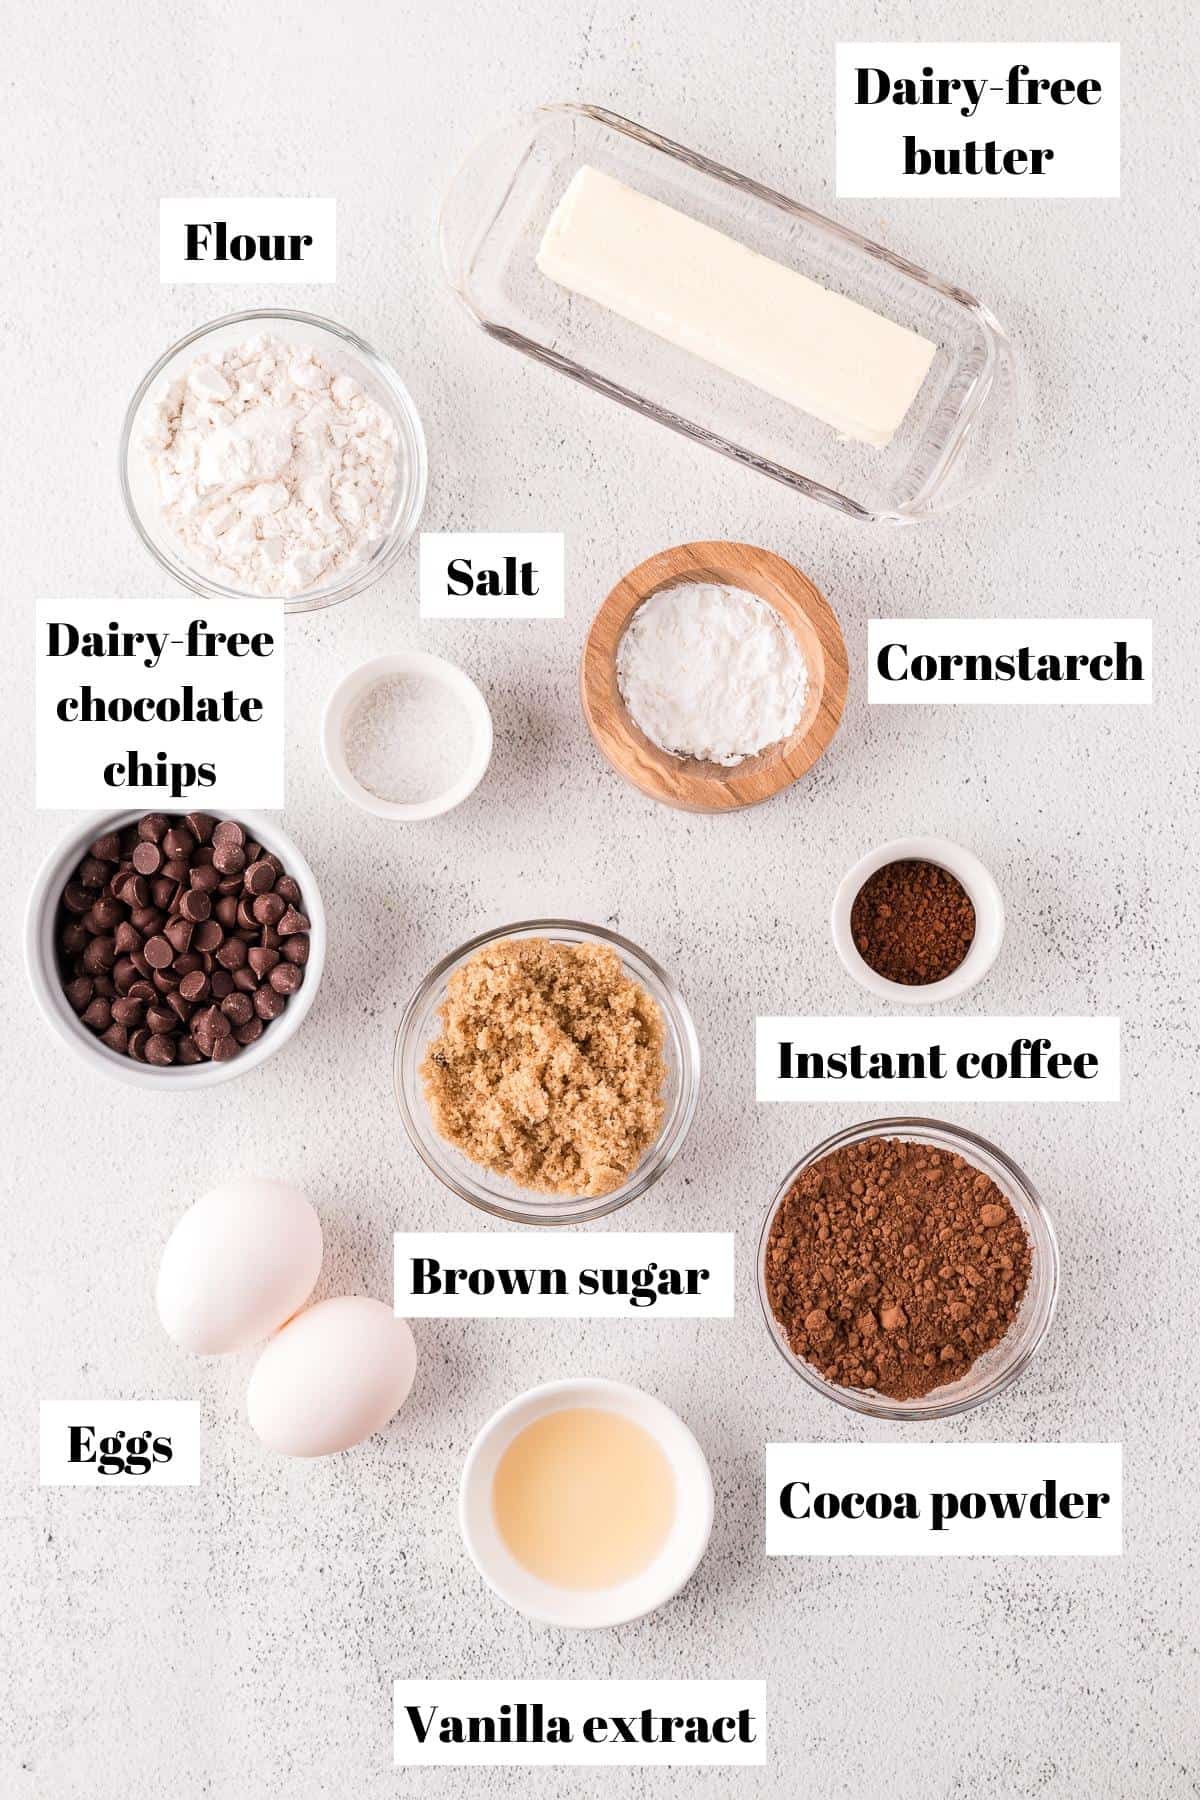 Ingredients for dairy-free brownies.